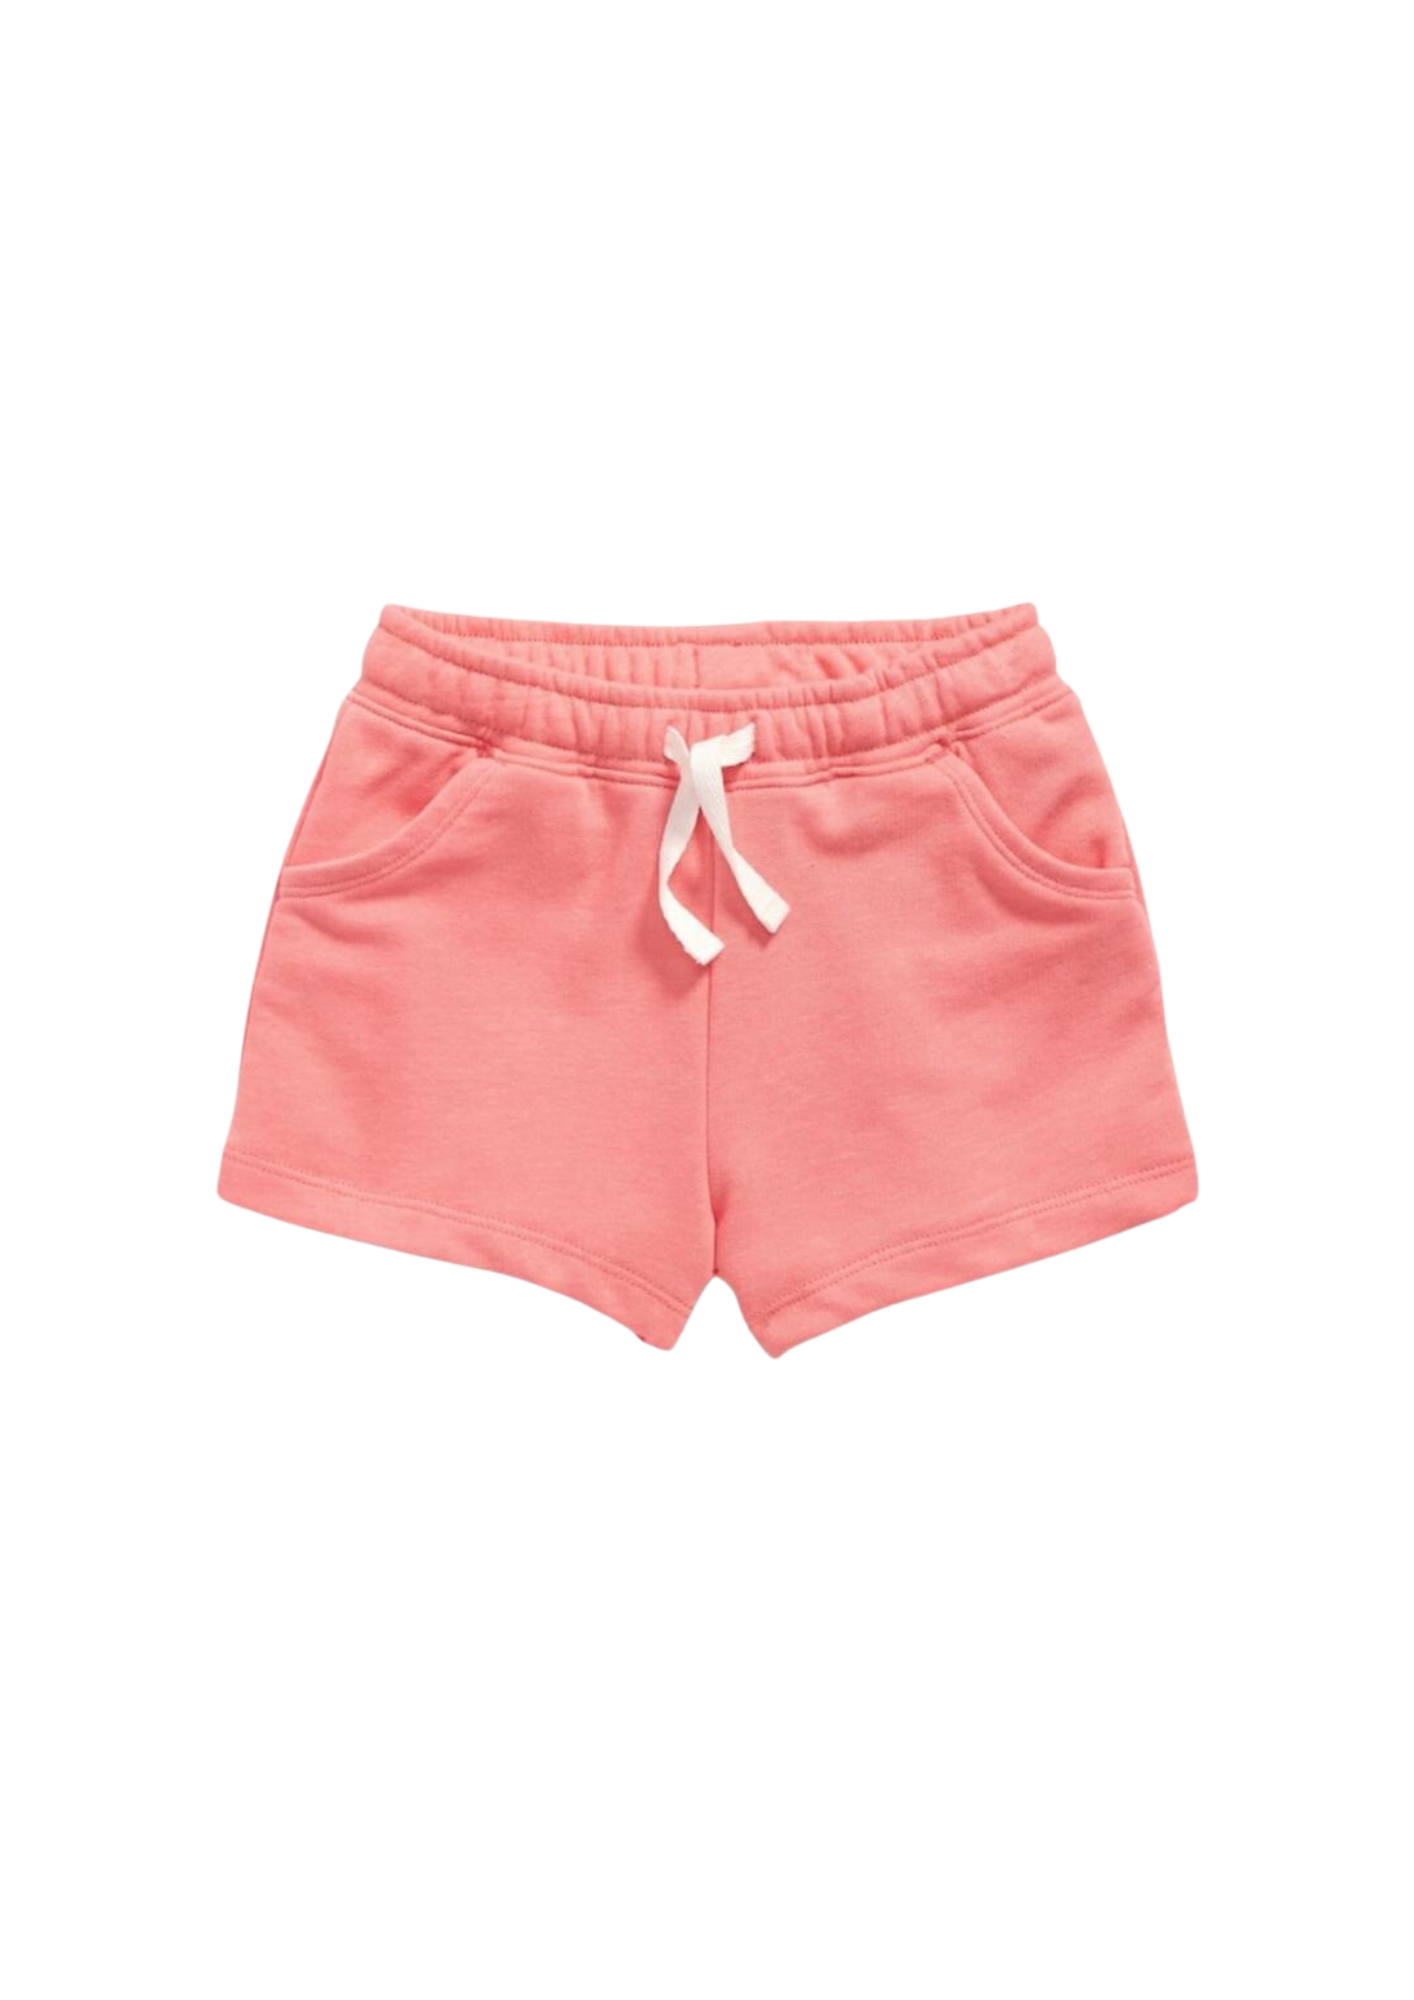 Old Navy - Shorts básico color rosado con cordón funcional